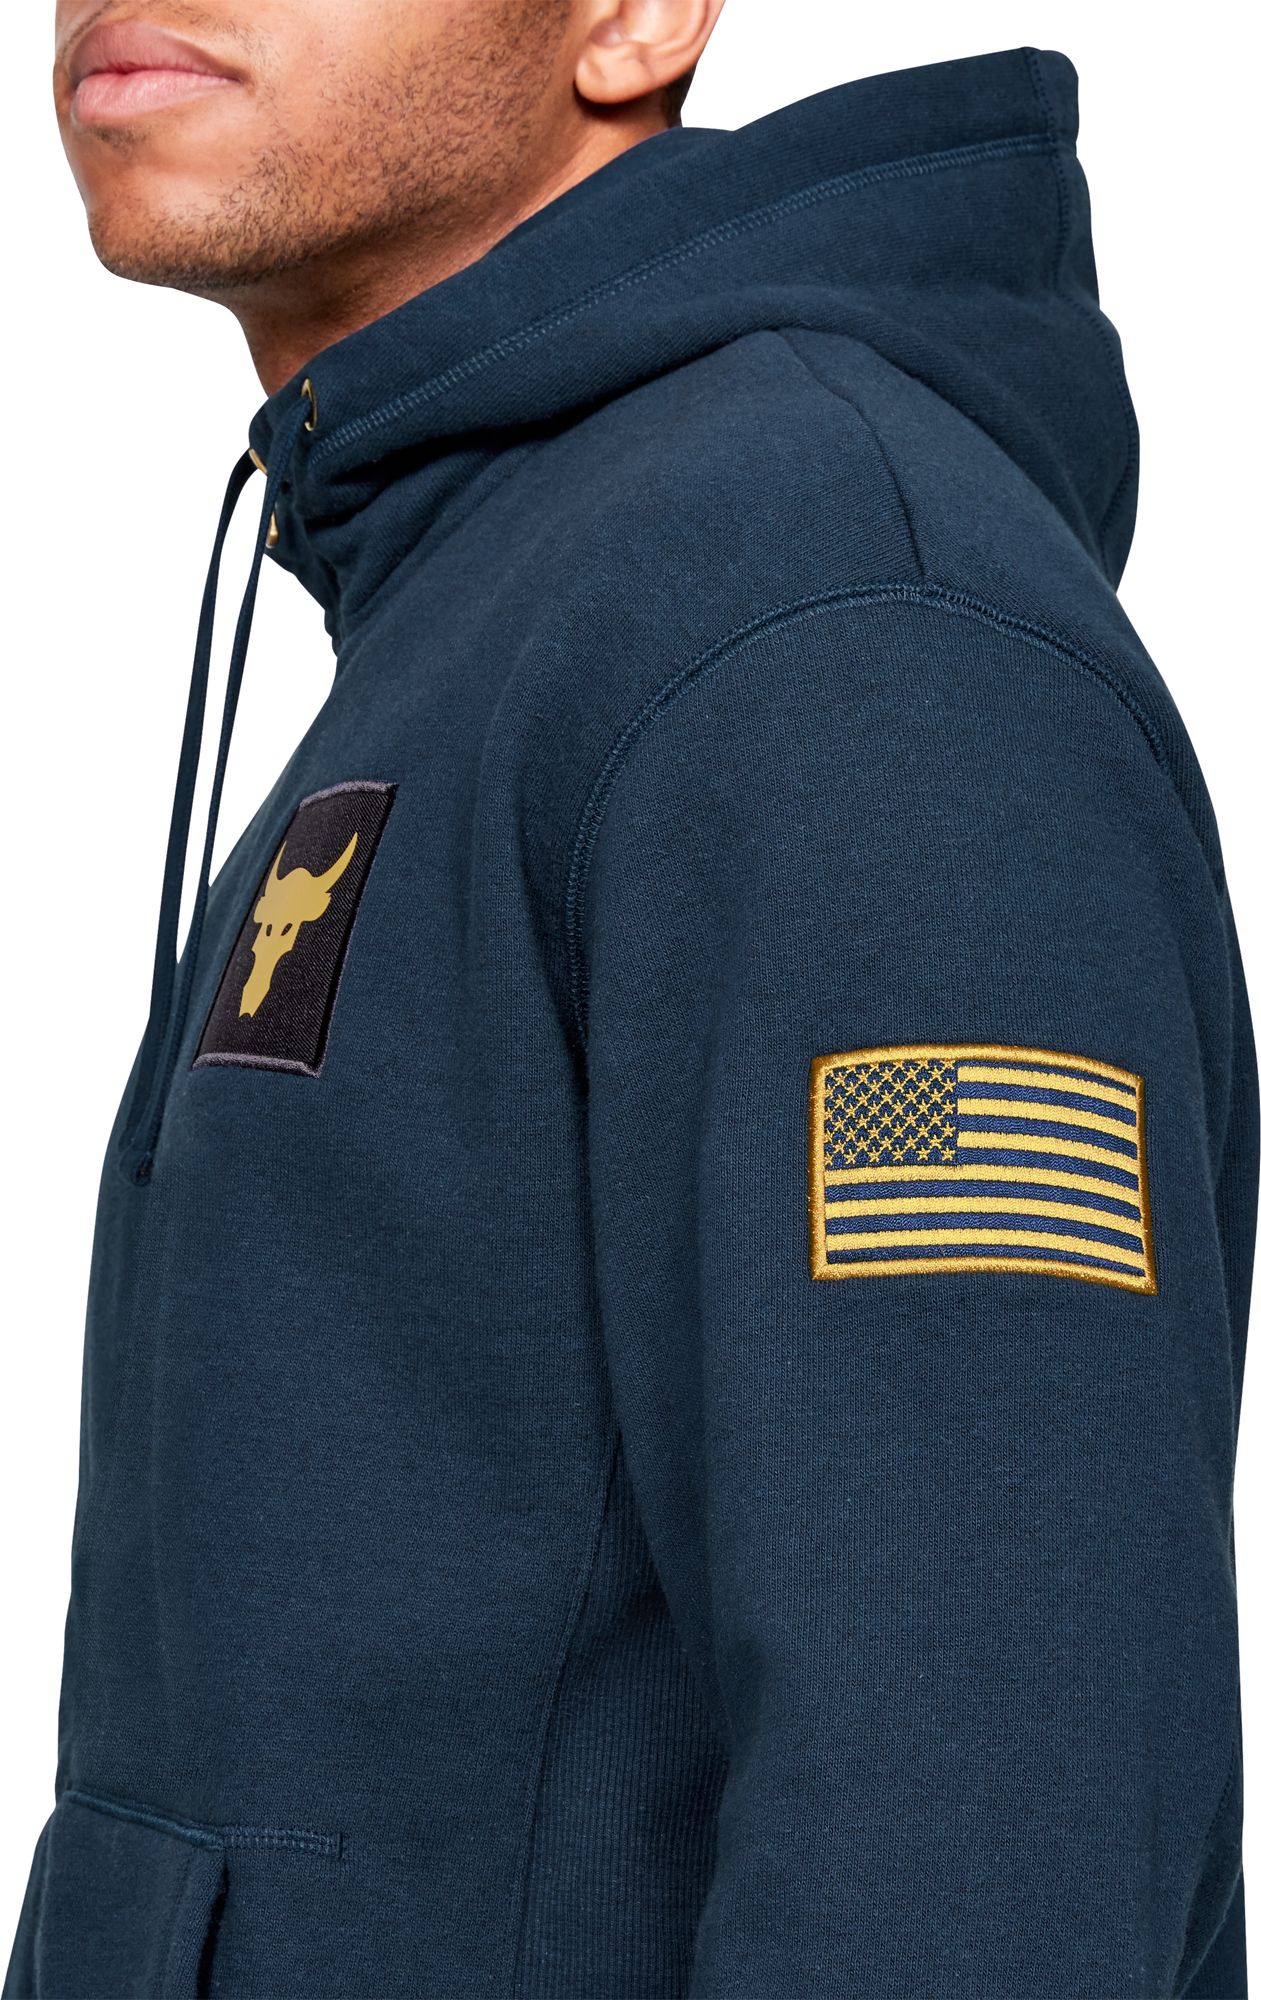 under armour veterans hoodie